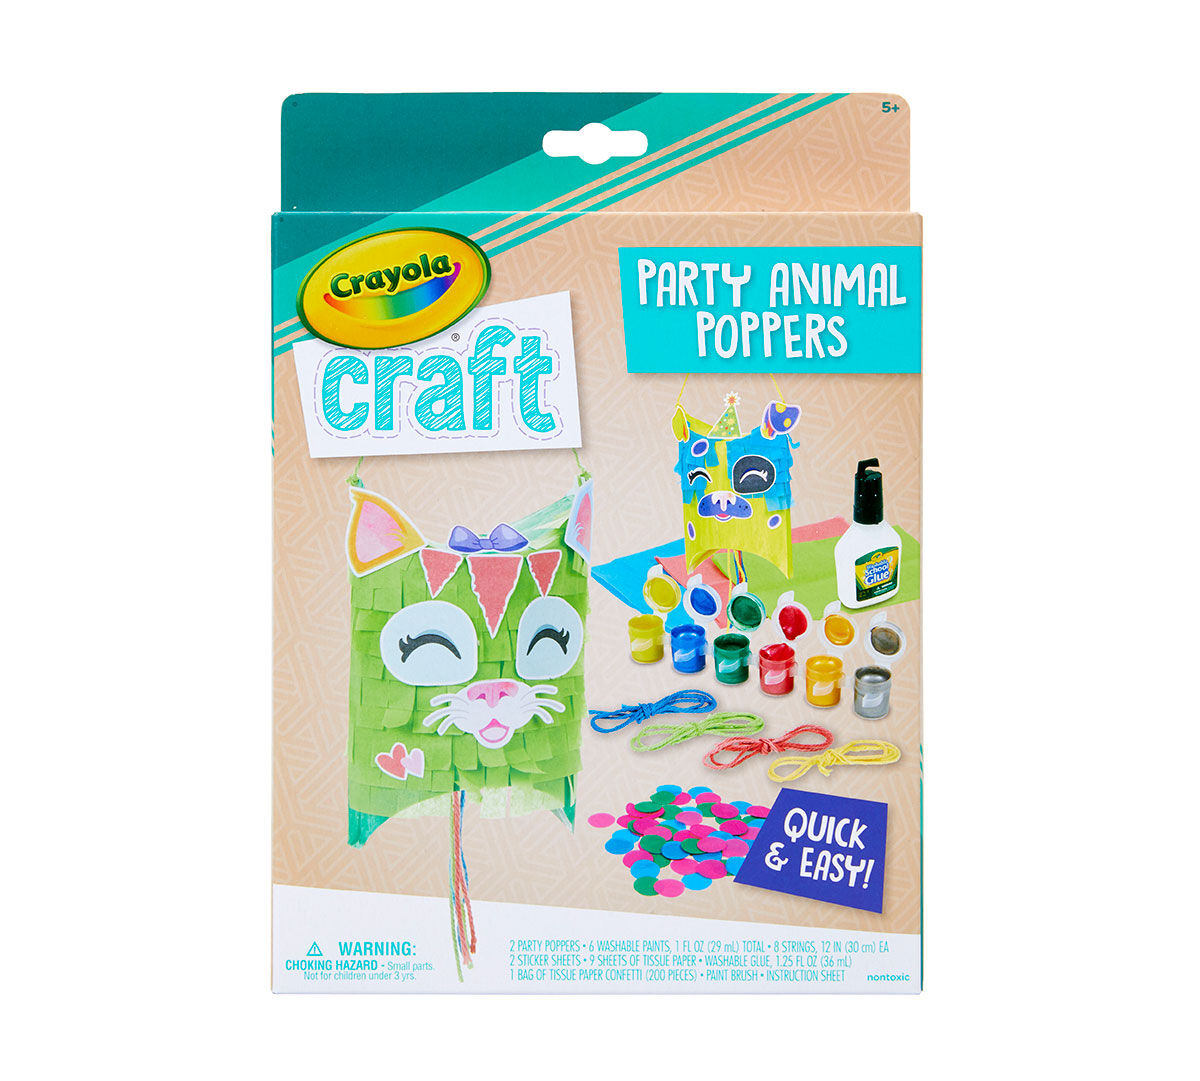 Crayola Craft Gift Set, You Pick Craft Kits | Crayola.com | Crayola